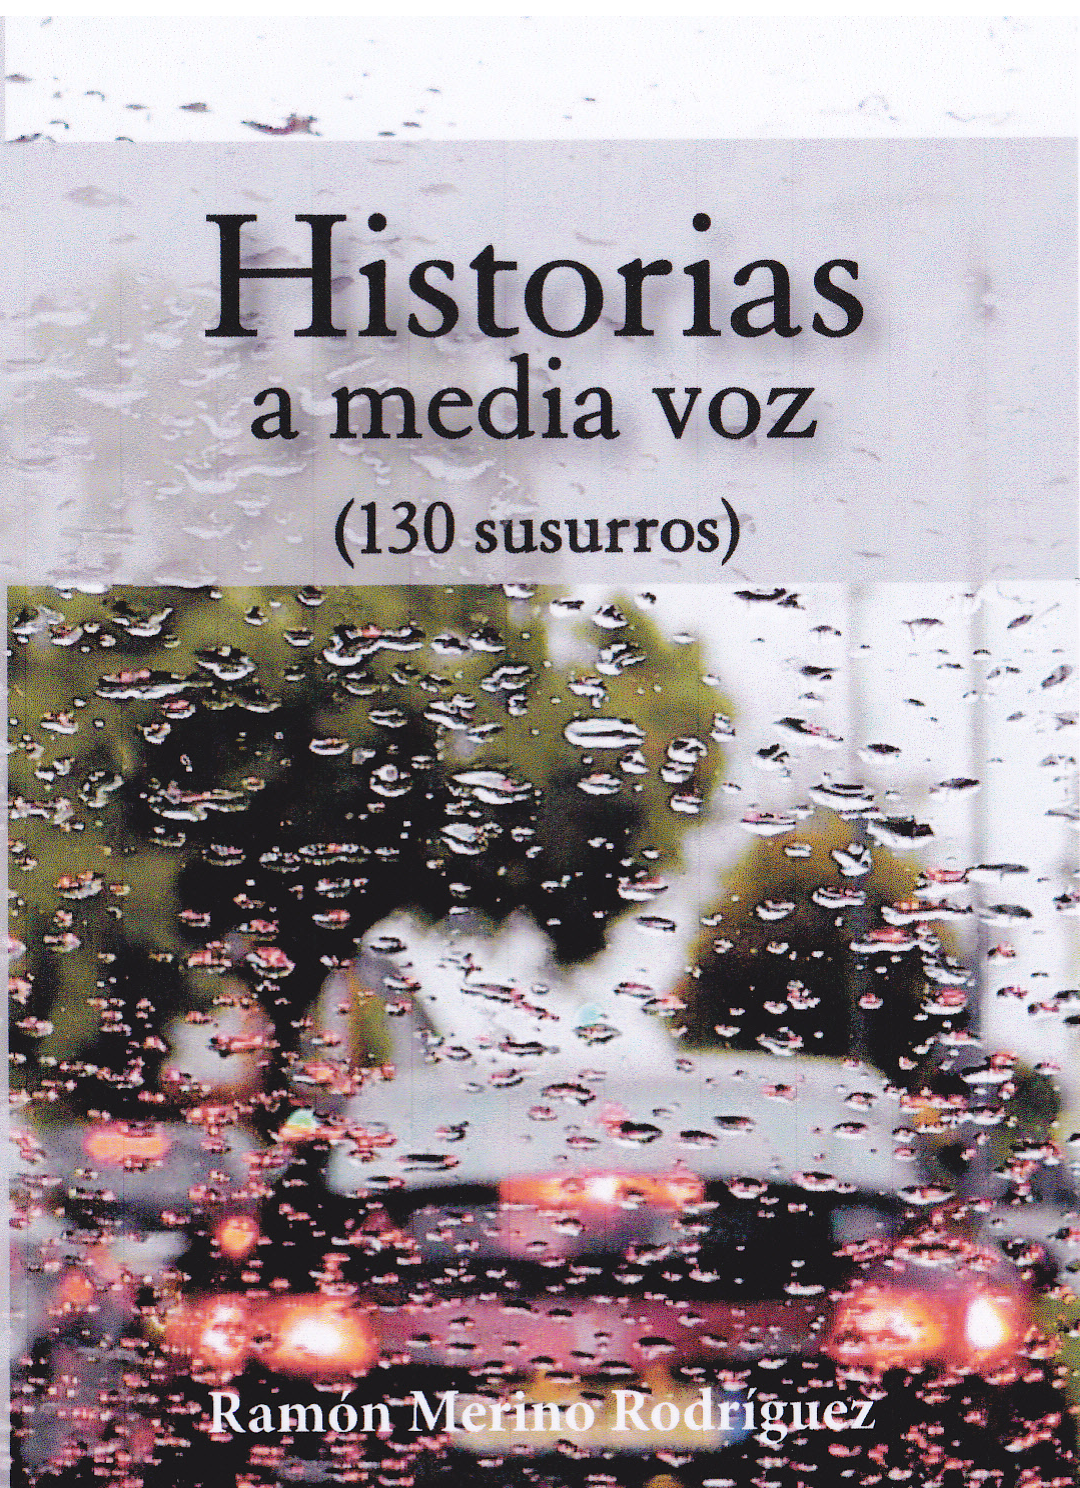 Libro "Historias a media voz"